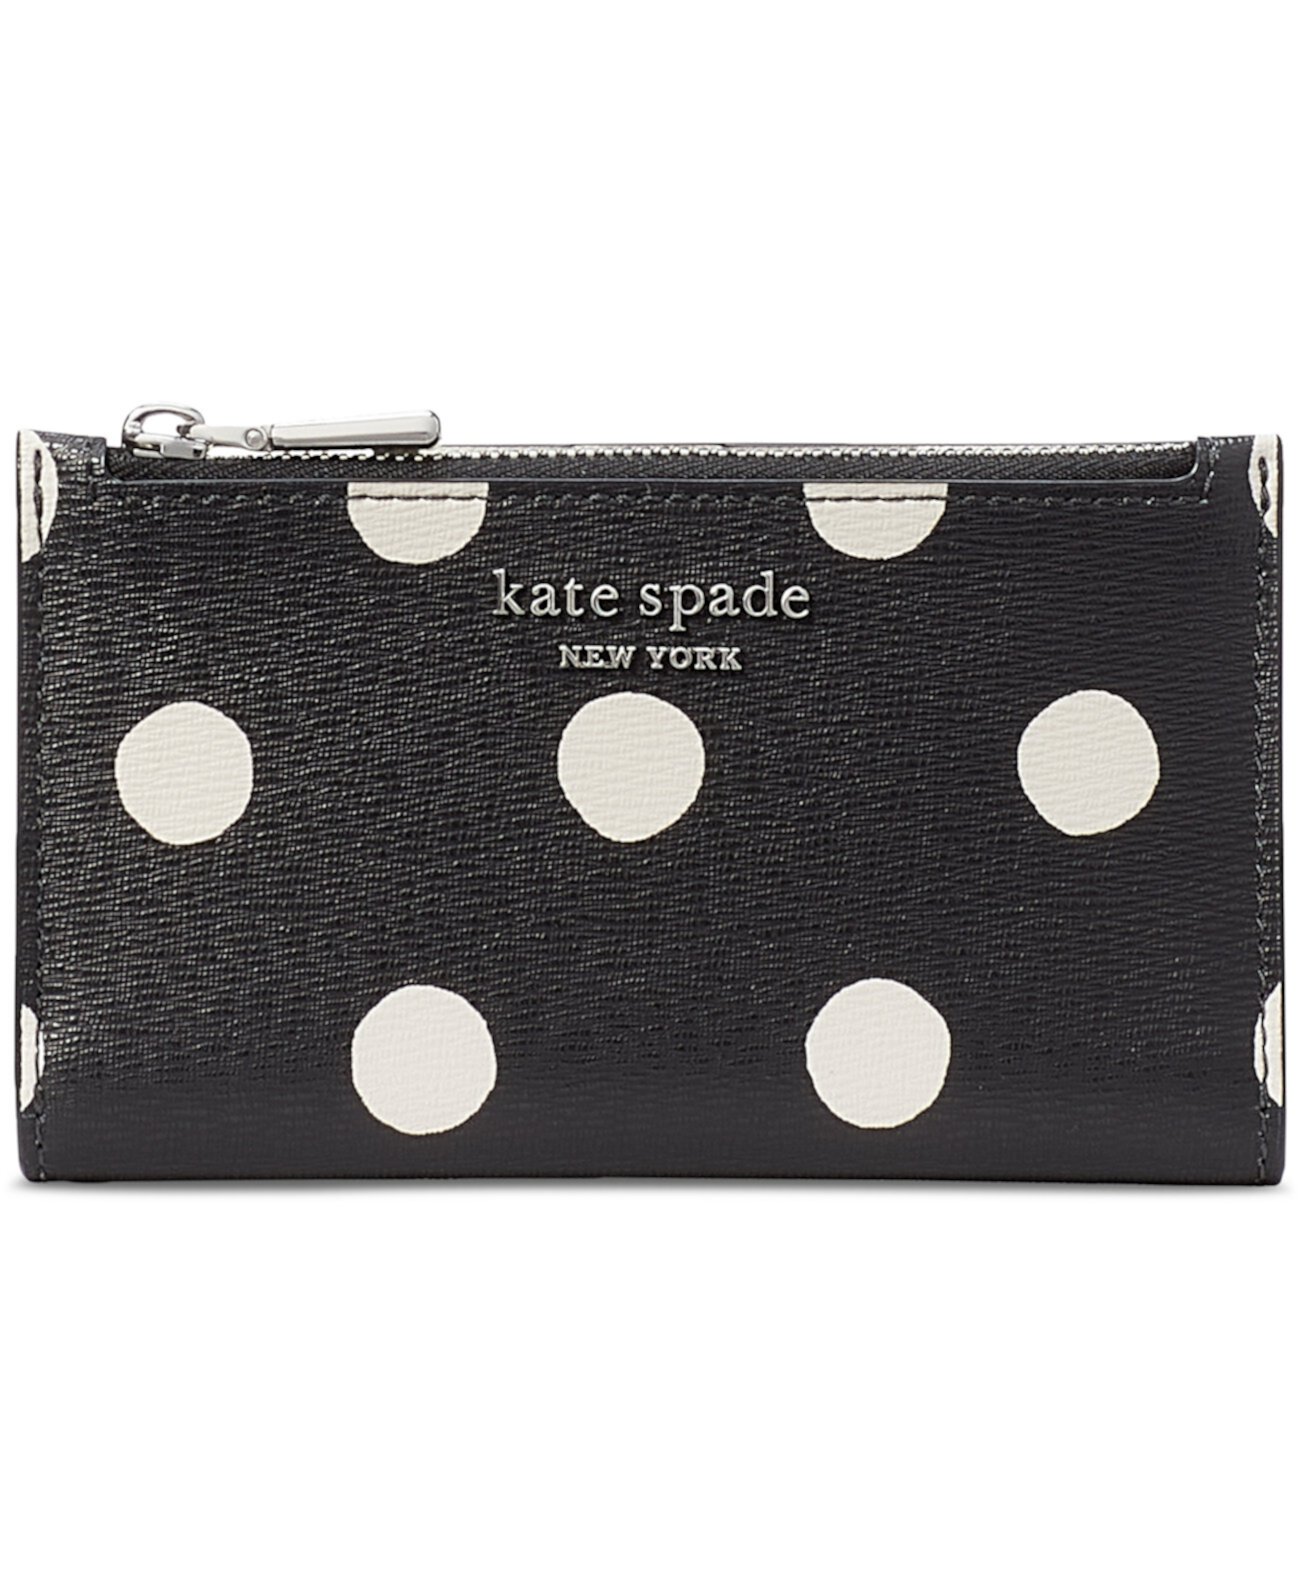 Тонкий бумажник двойного сложения Morgan Sunshine Dot из сафьяновой кожи Kate Spade New York